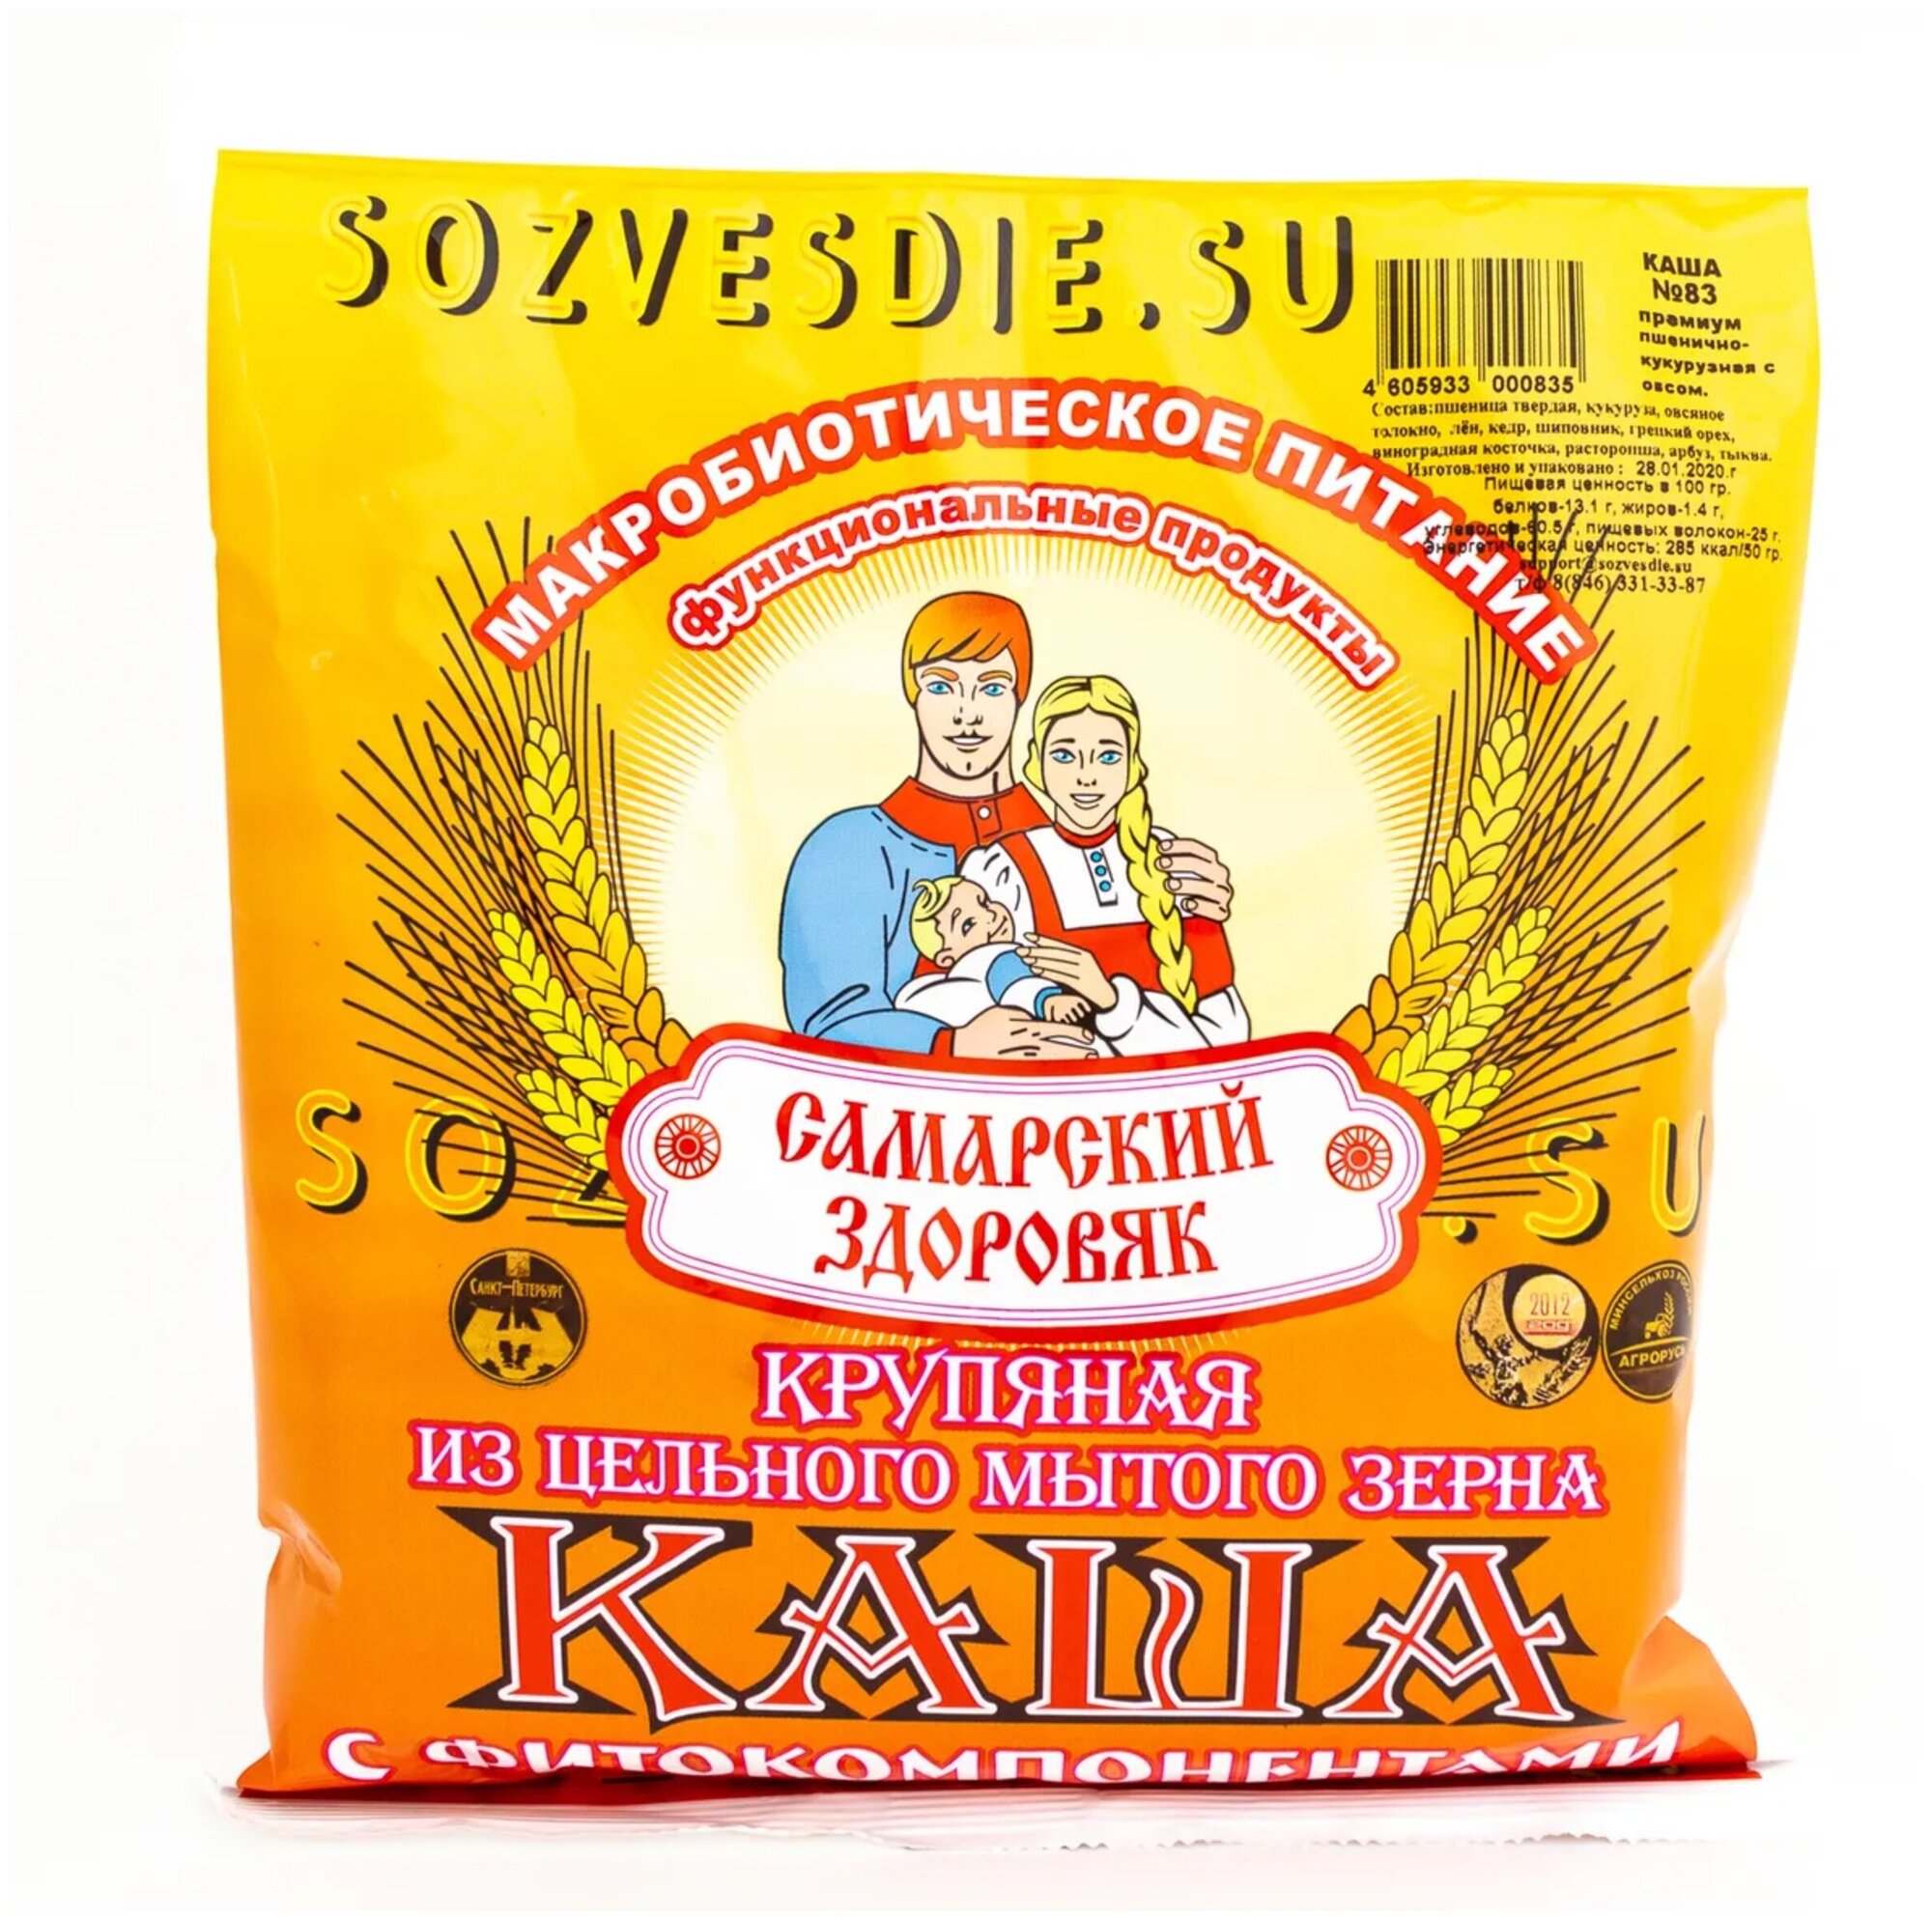 Каша "Самарский Здоровяк” №57 Пшеничная с расторопшей льном и кедровым орехом 250 г.